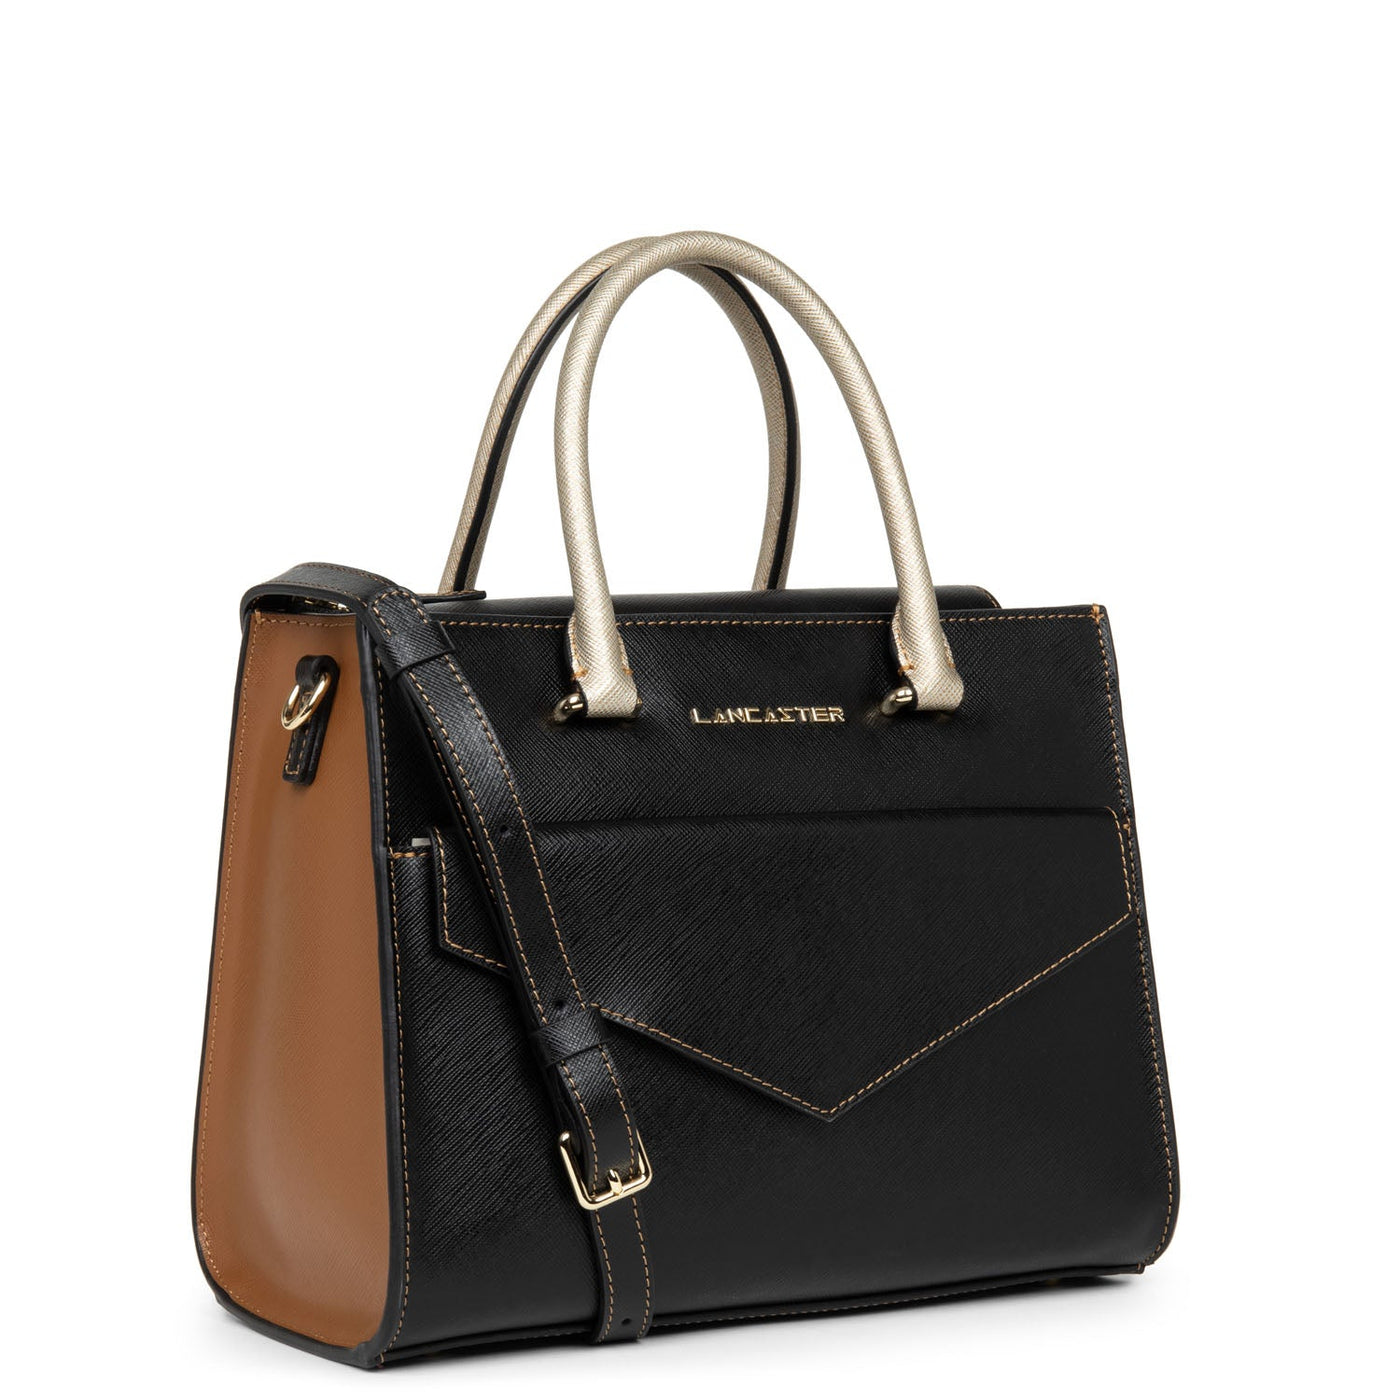 handbag - saffiano signature #couleur_noir-camel-champagne